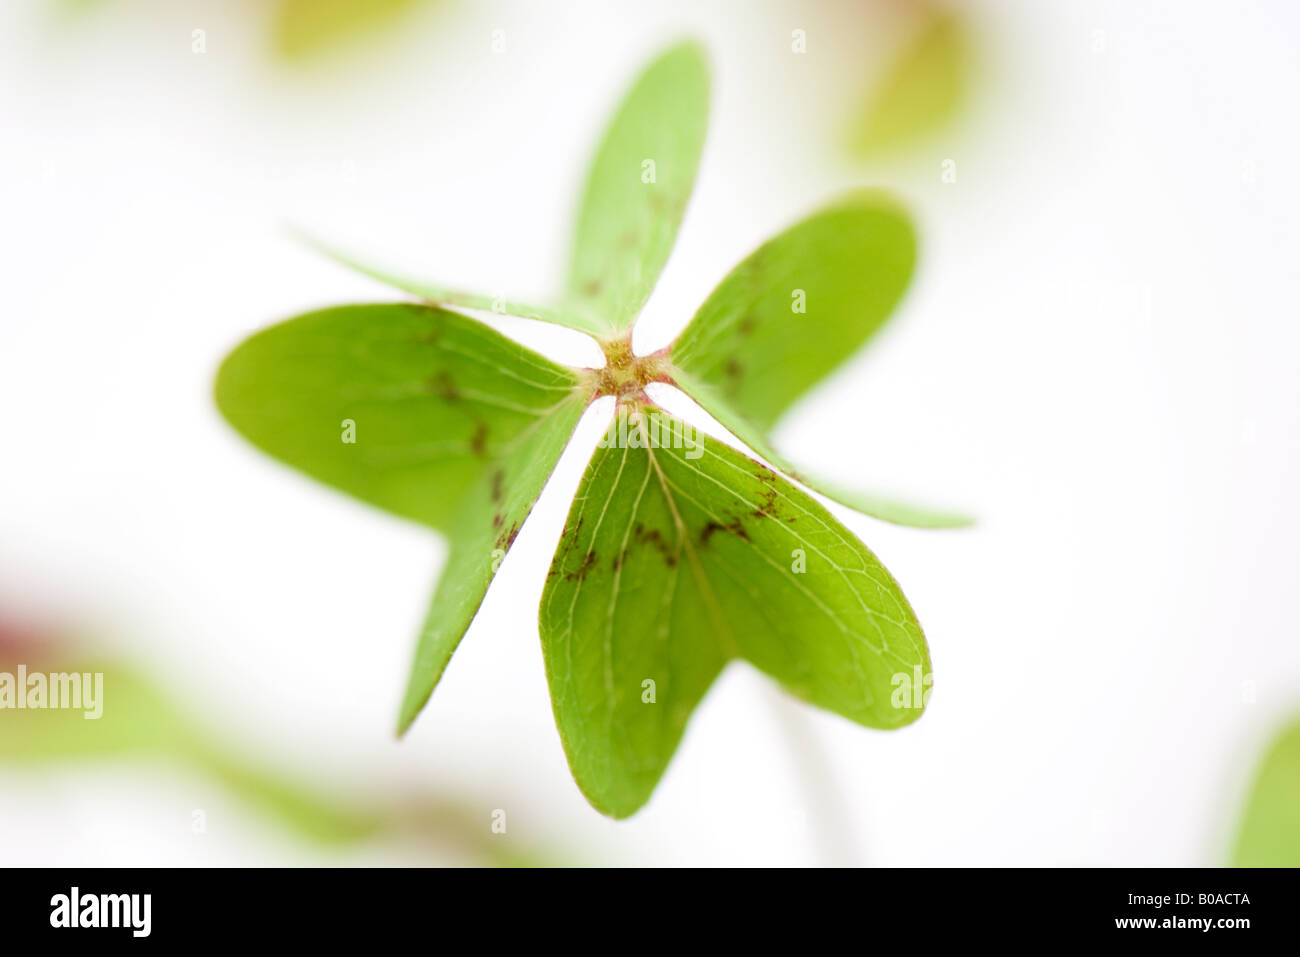 Four leaf clover Stock Photo